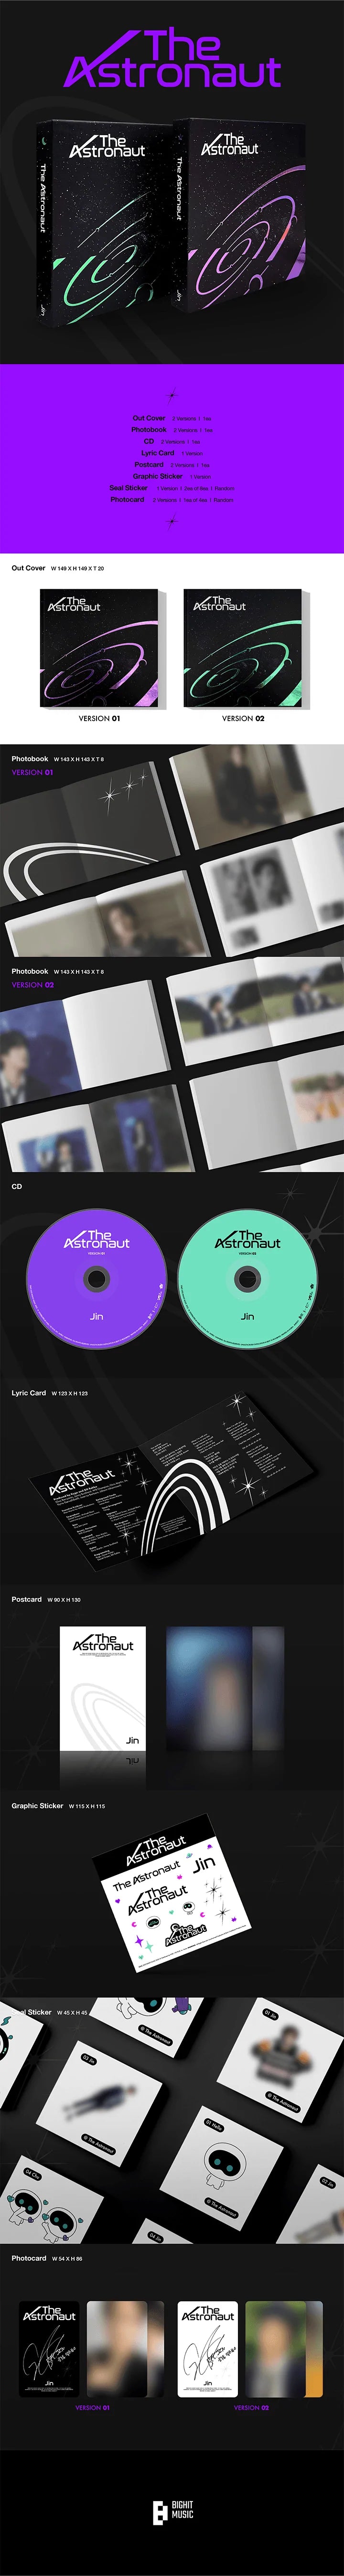 JIN (BTS) - SOLO ALBUM [ THE ASTRONAUT ] Infographic